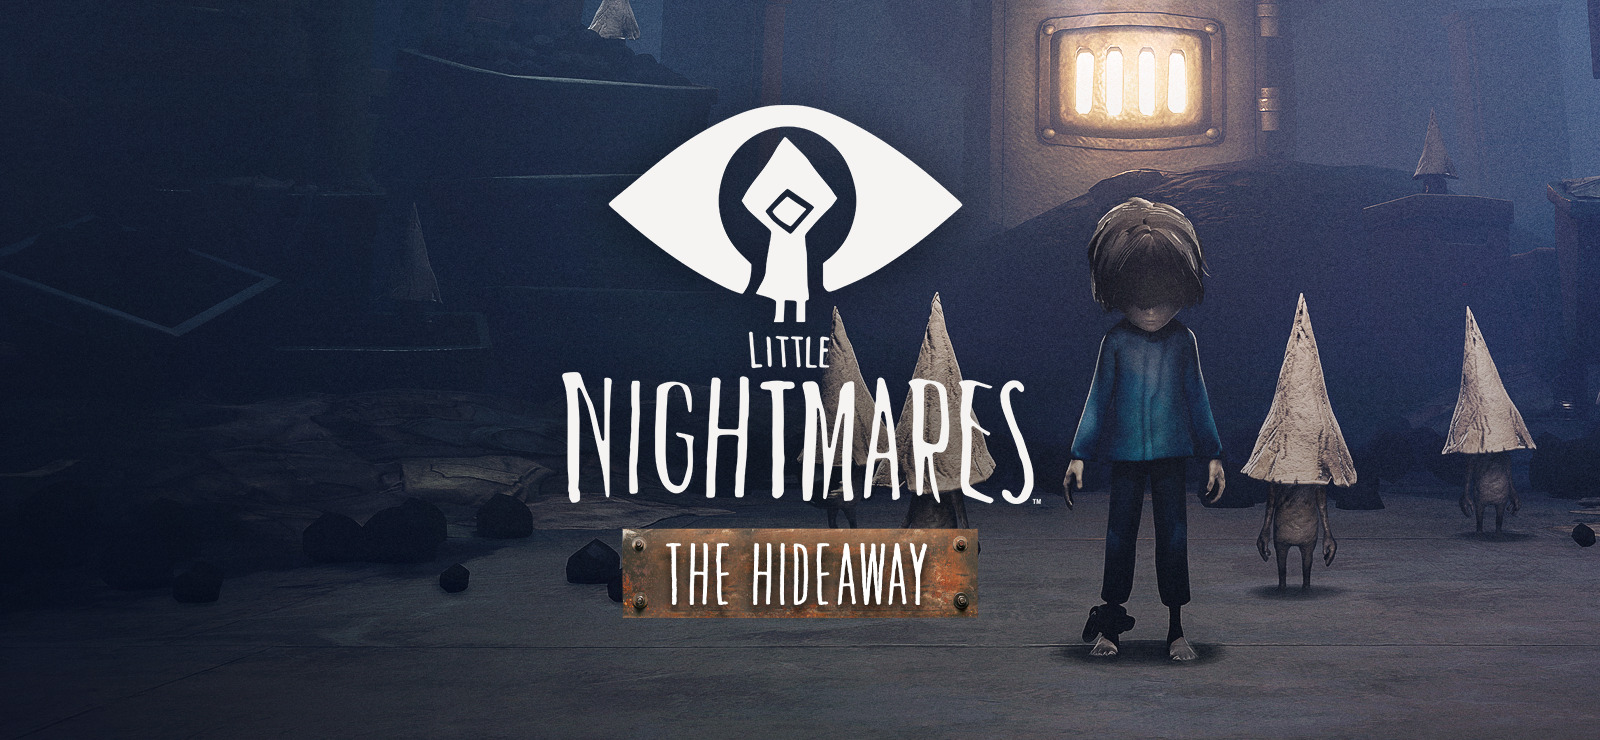 Little nightmare 1 2. Little Nightmares 1 дополнение. Little Nightmares 1 DLS. Little Nightmares 2 DLC. Little Nightmares the Hideaway.